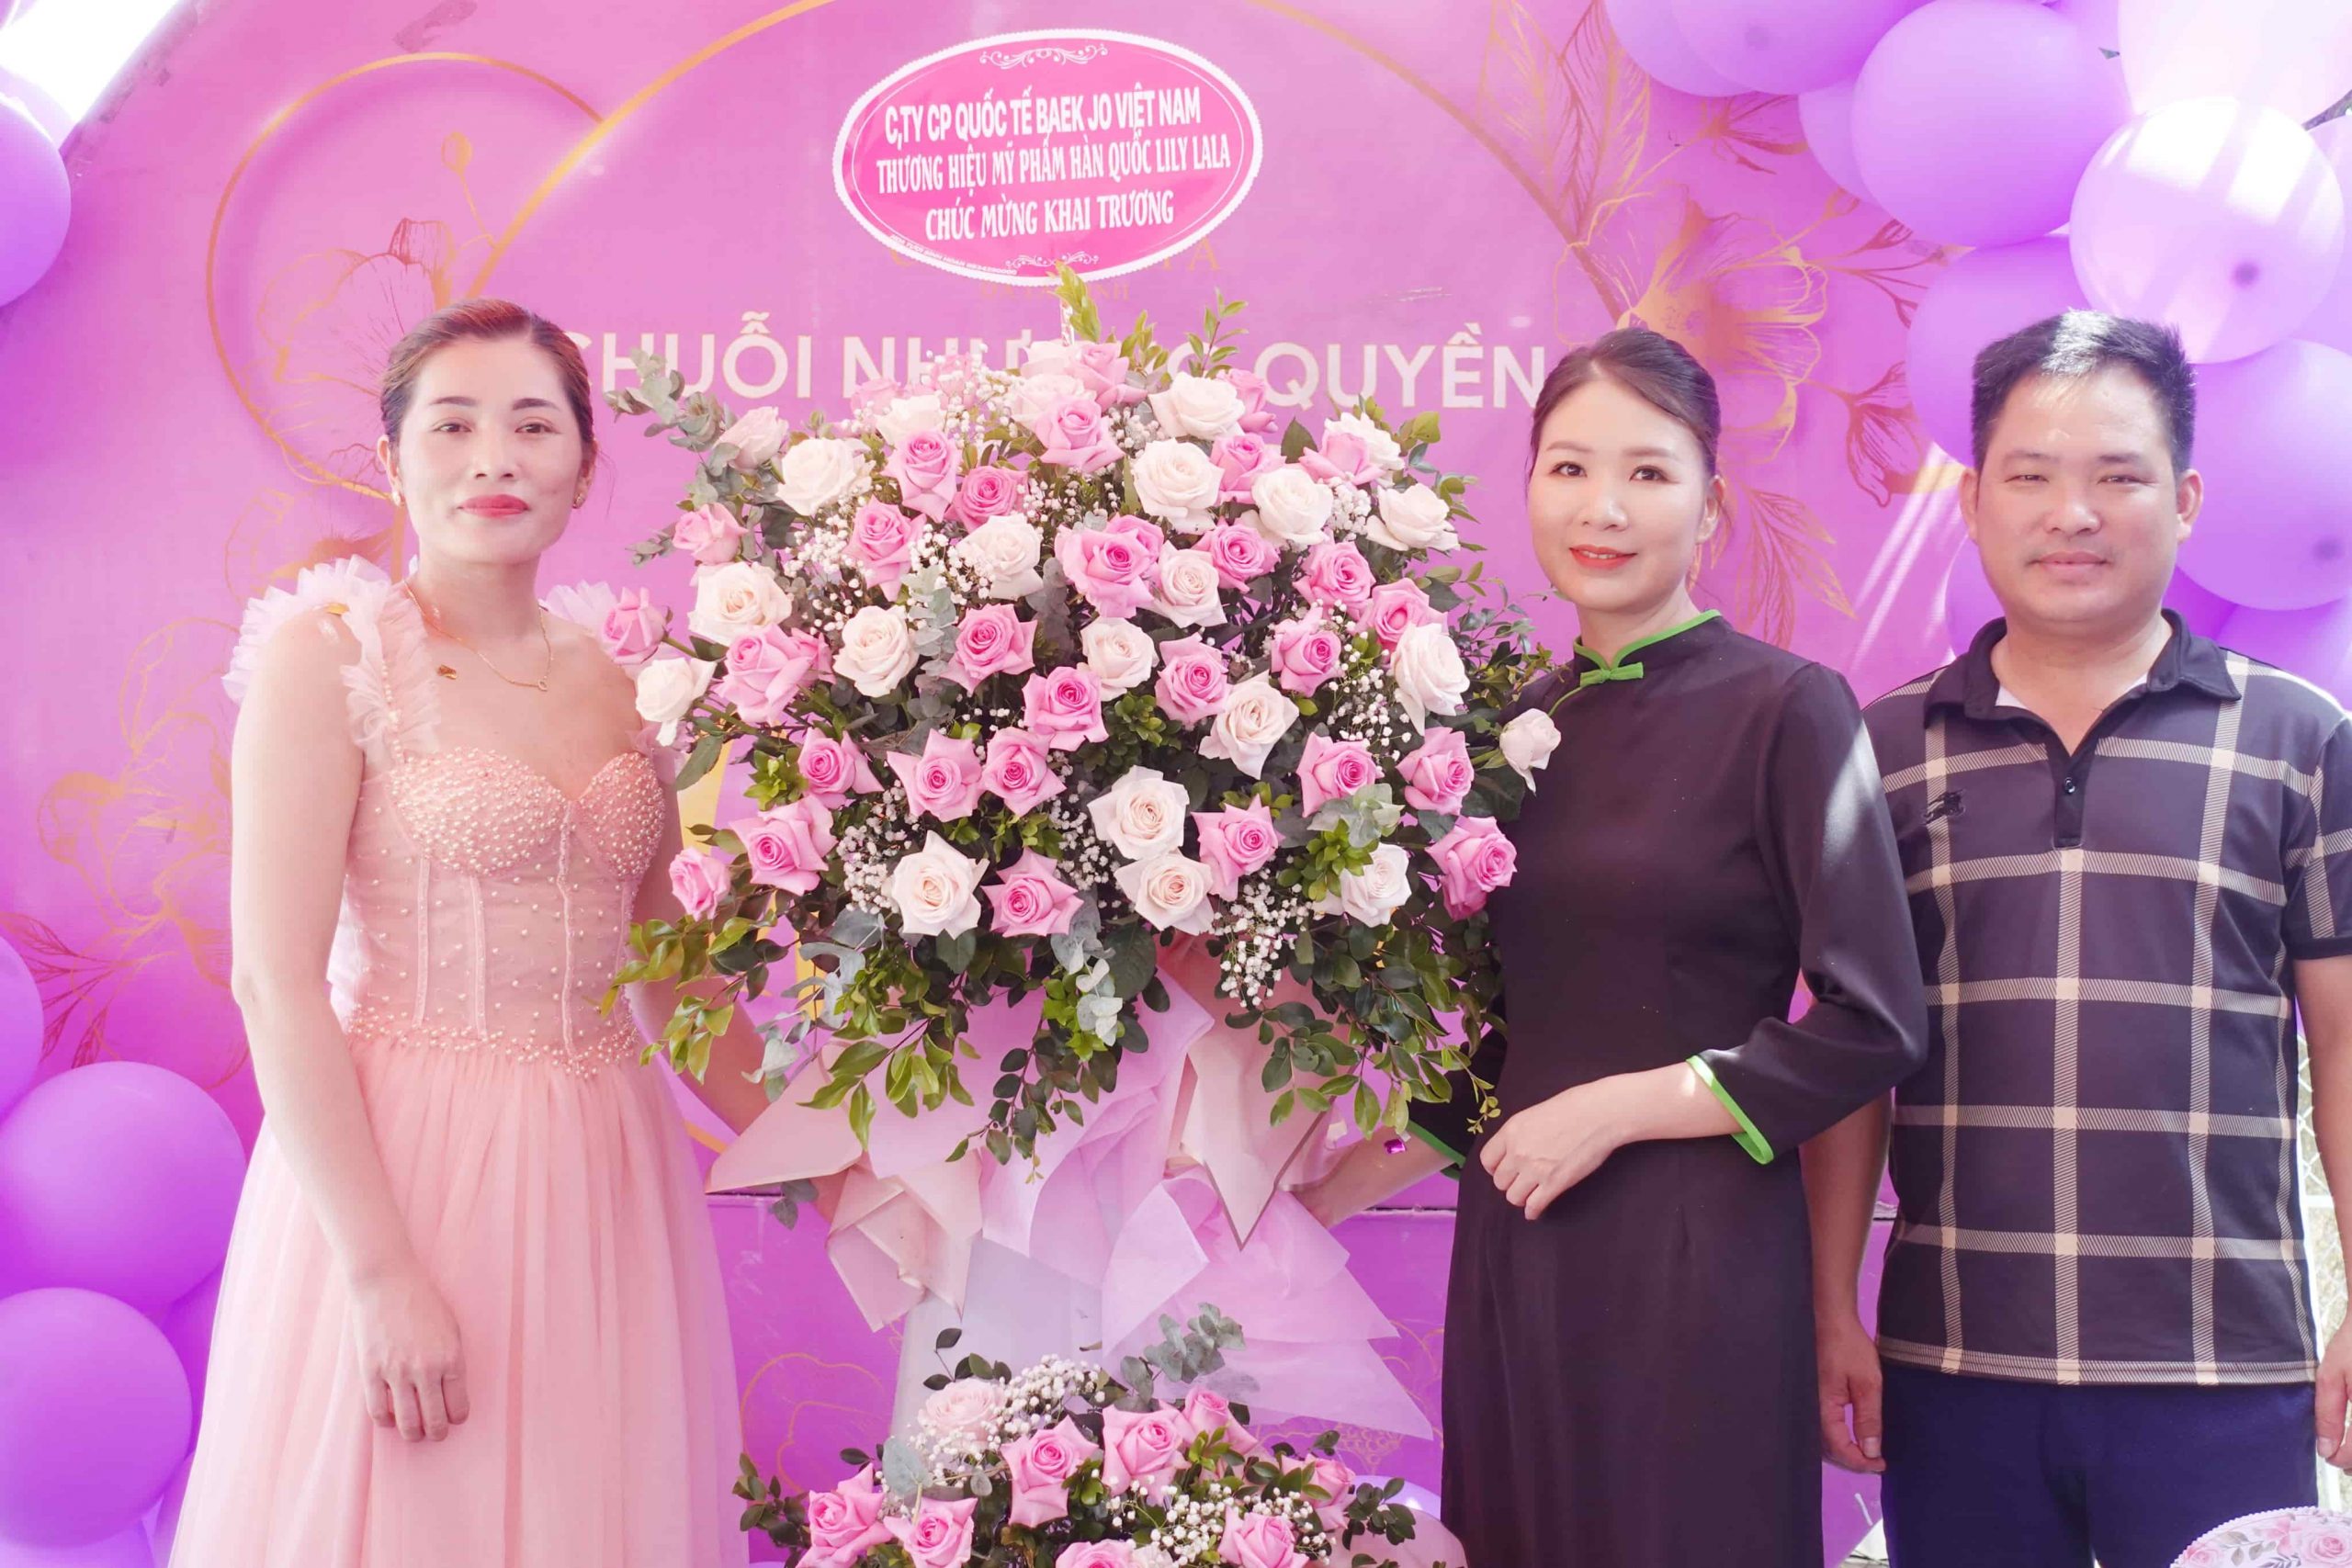 Giám đốc Đặng Nghi gửi lãng hoa chúc mừng Cerabe Spa khai trương hồng phát